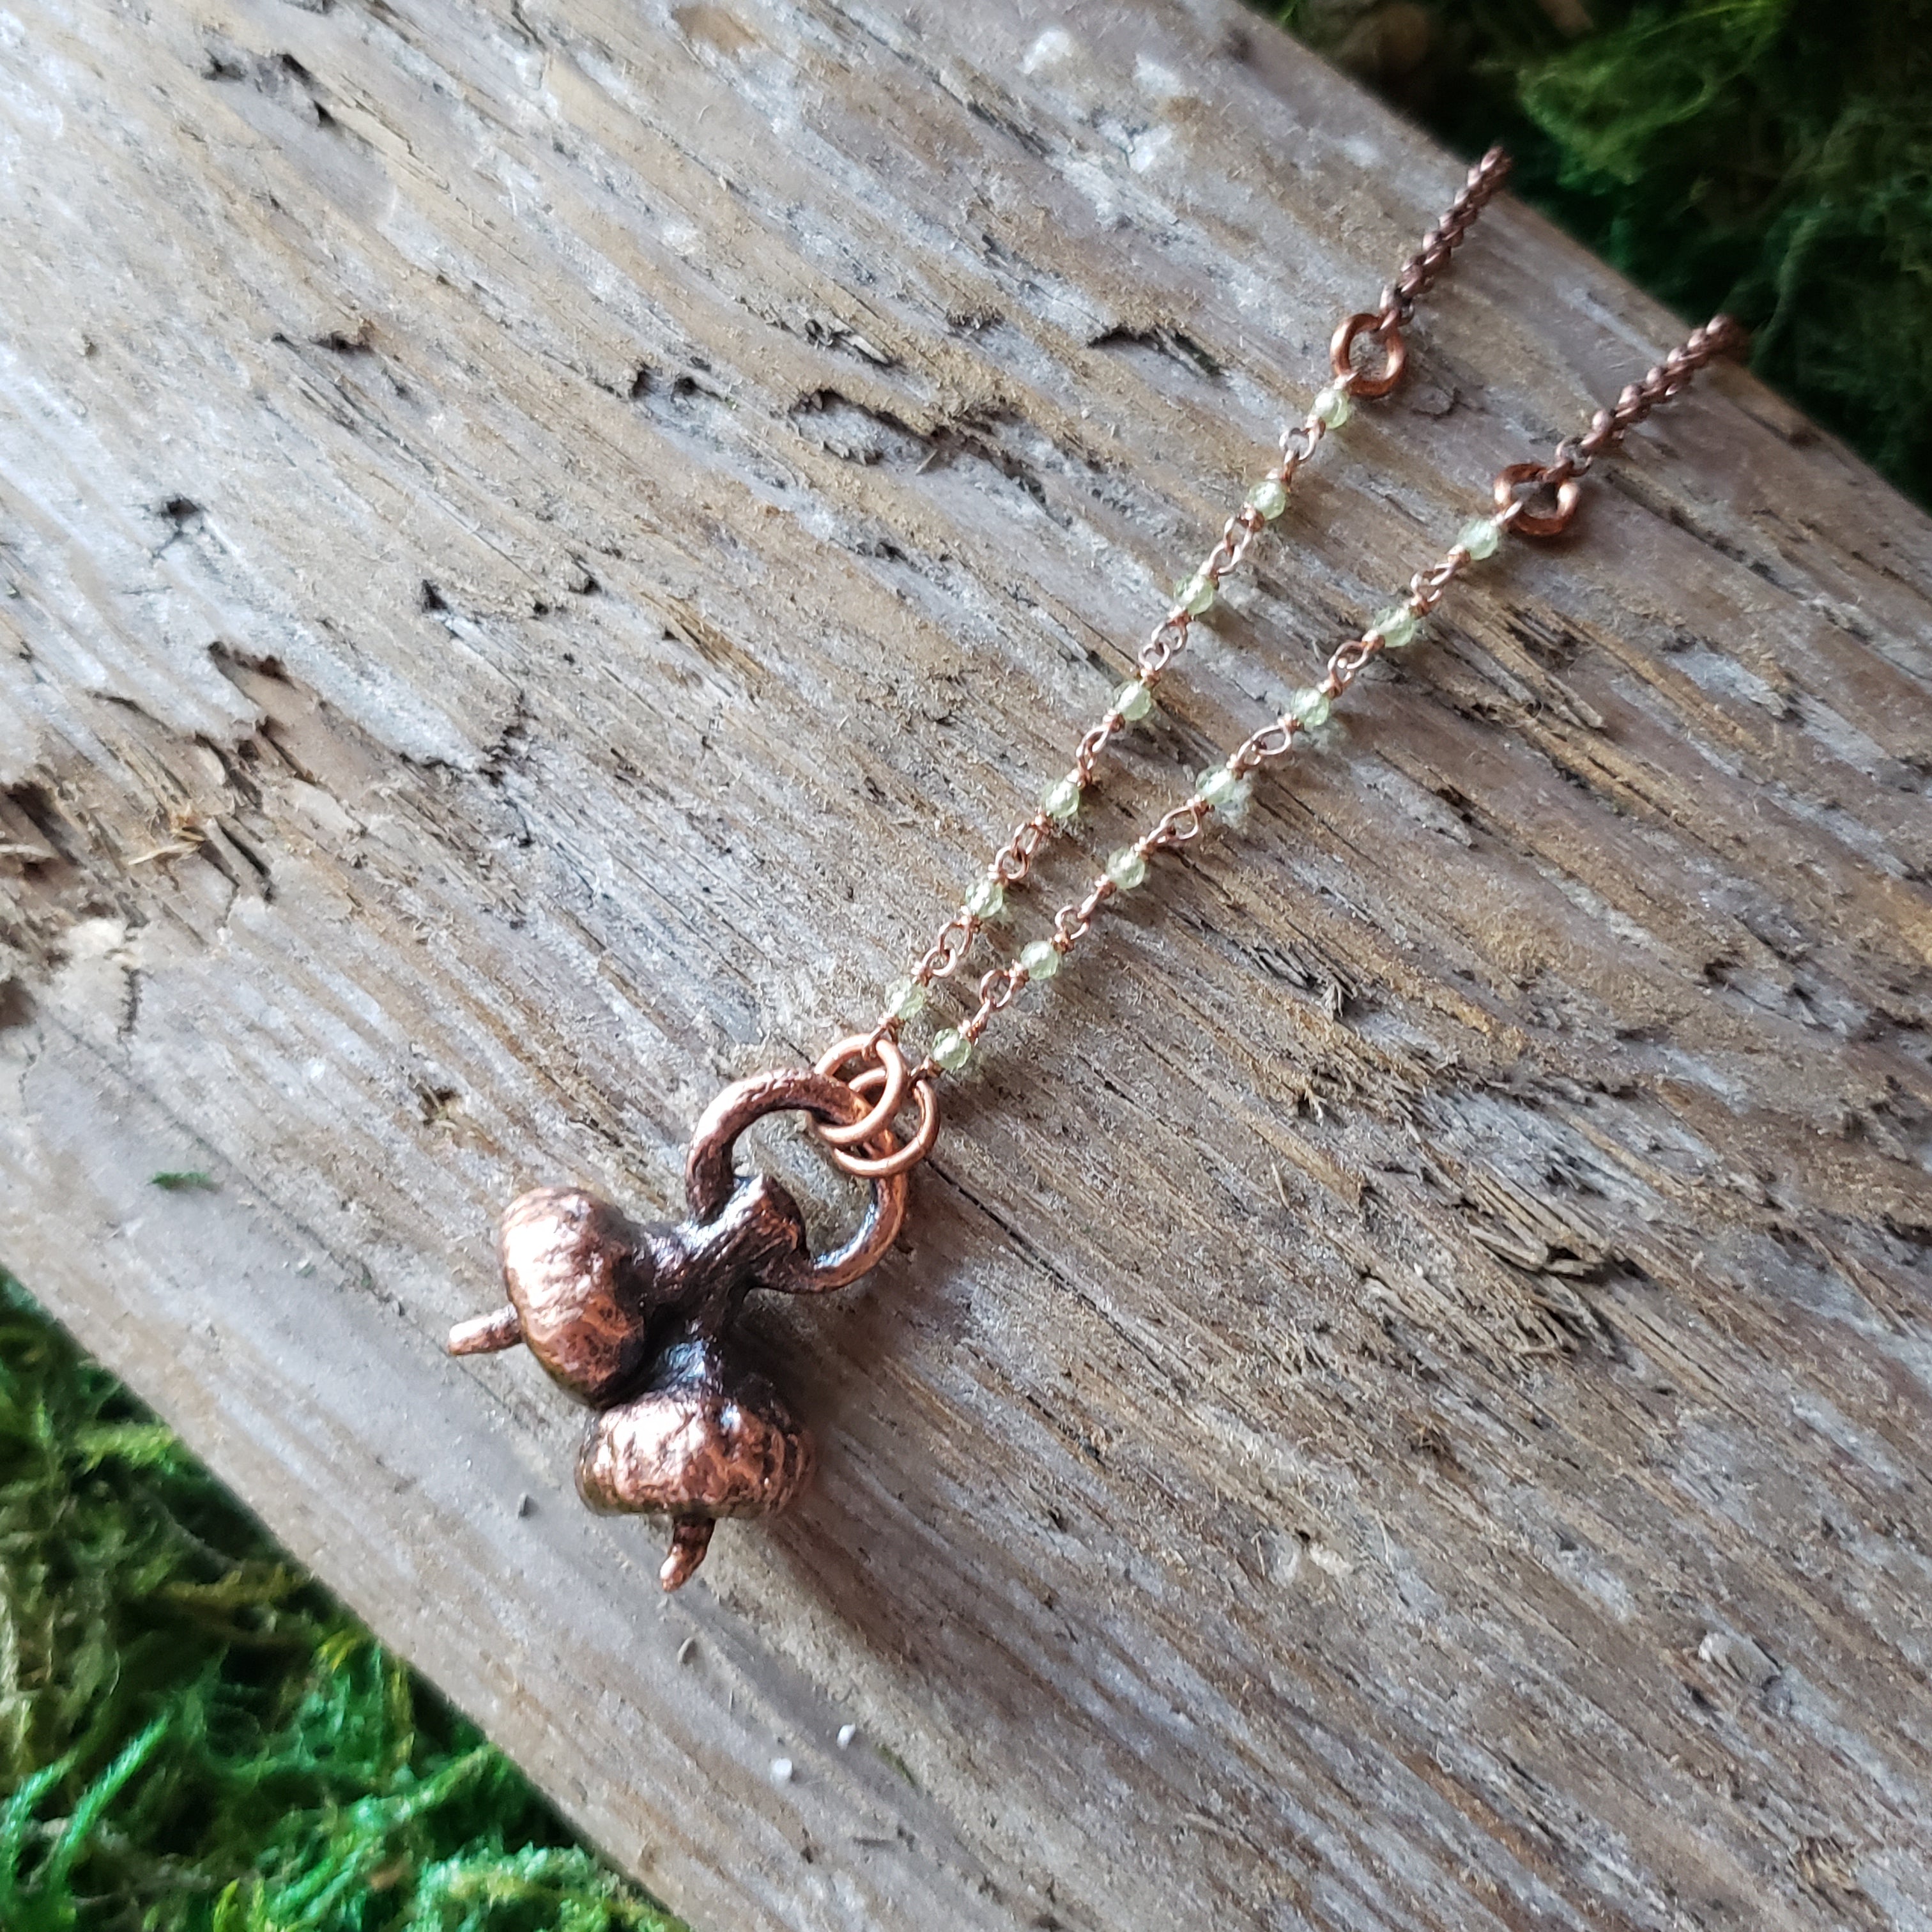 Copper Acorn & Peridot Necklace